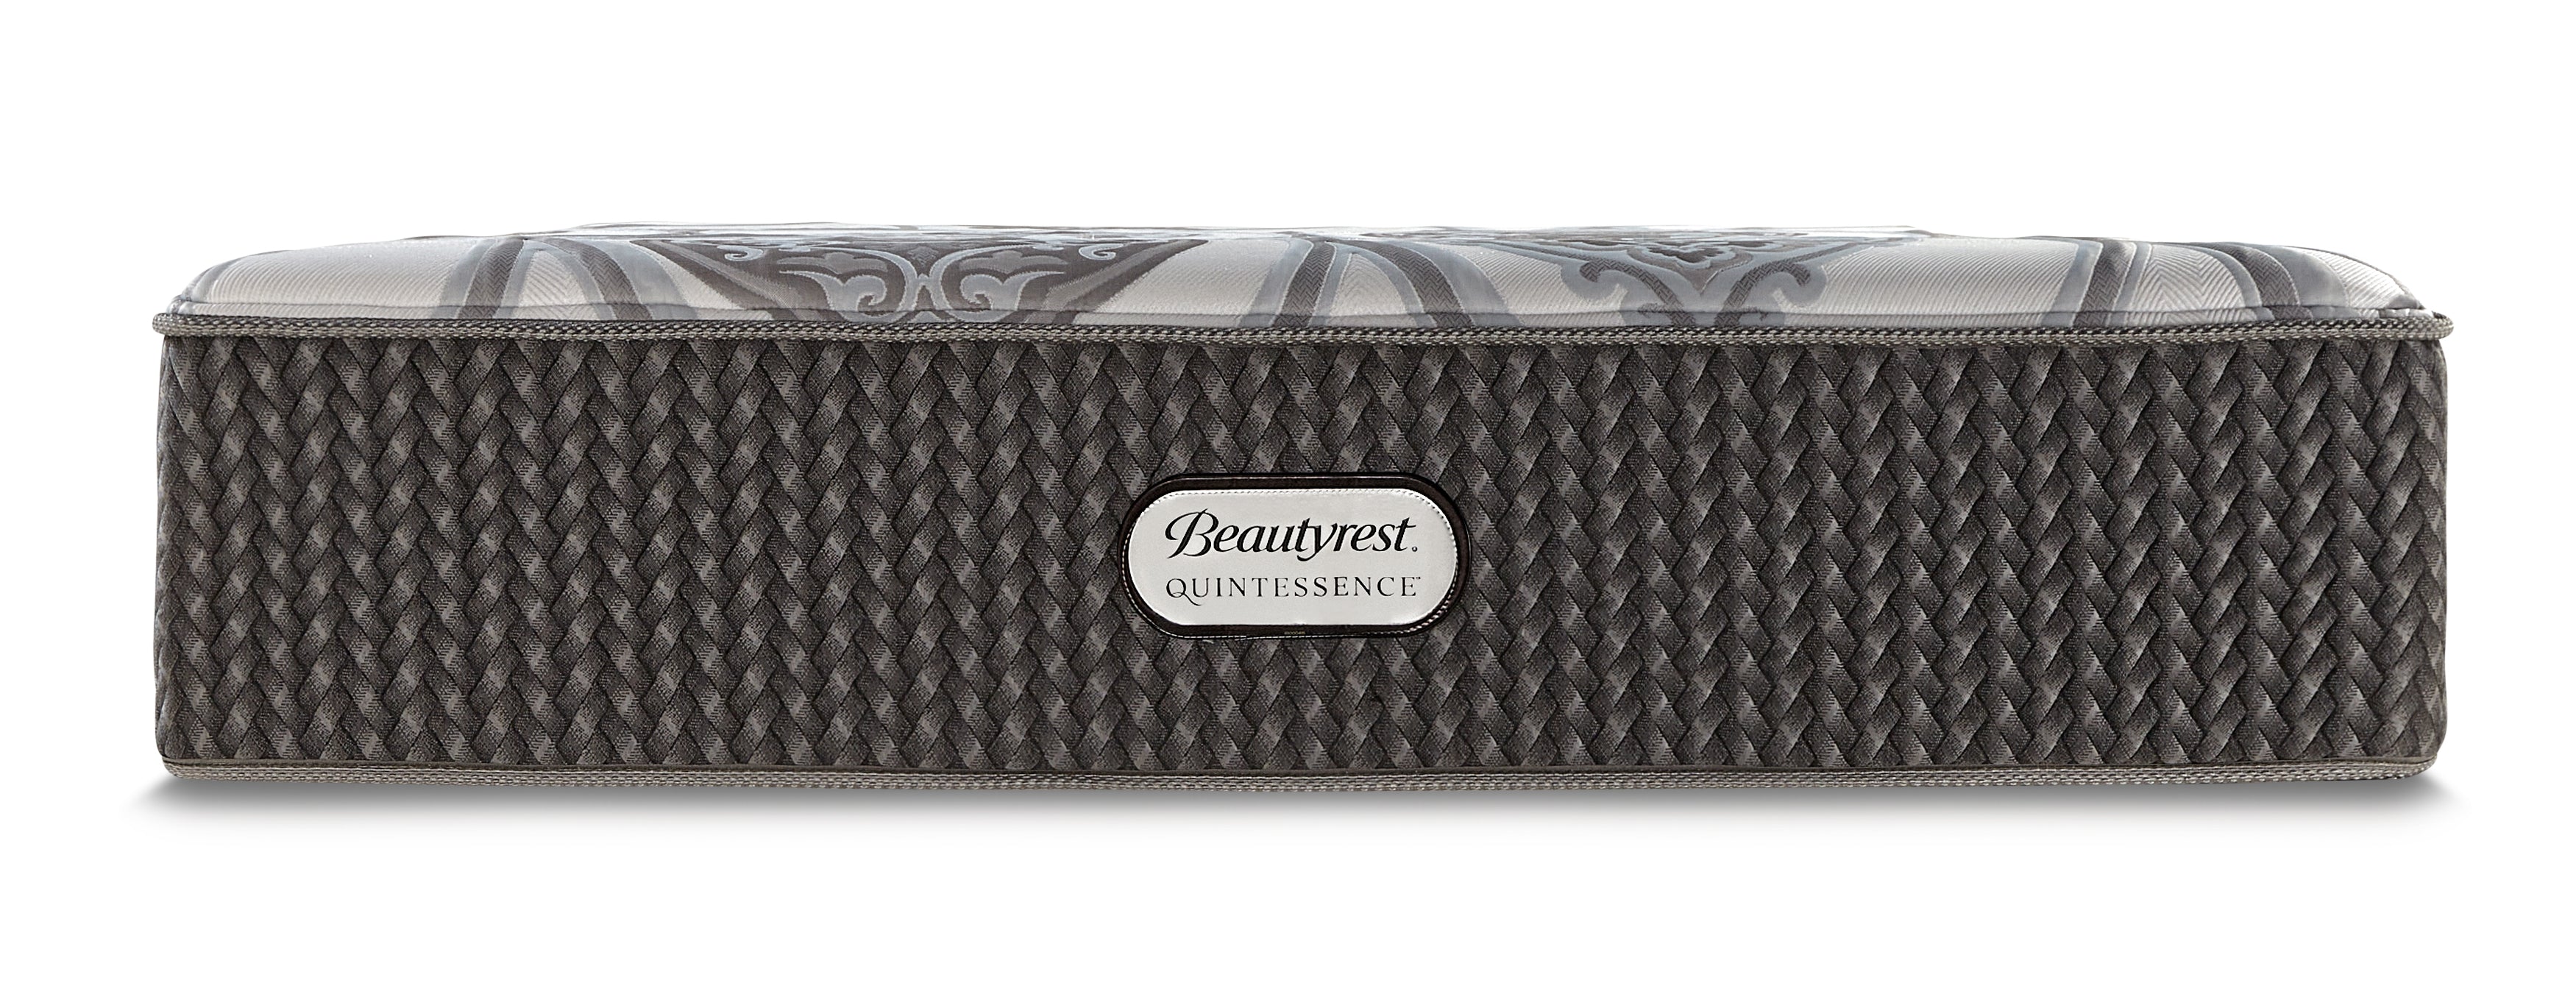 Beautyrest Quintessence Platinum Hybrid Mattress